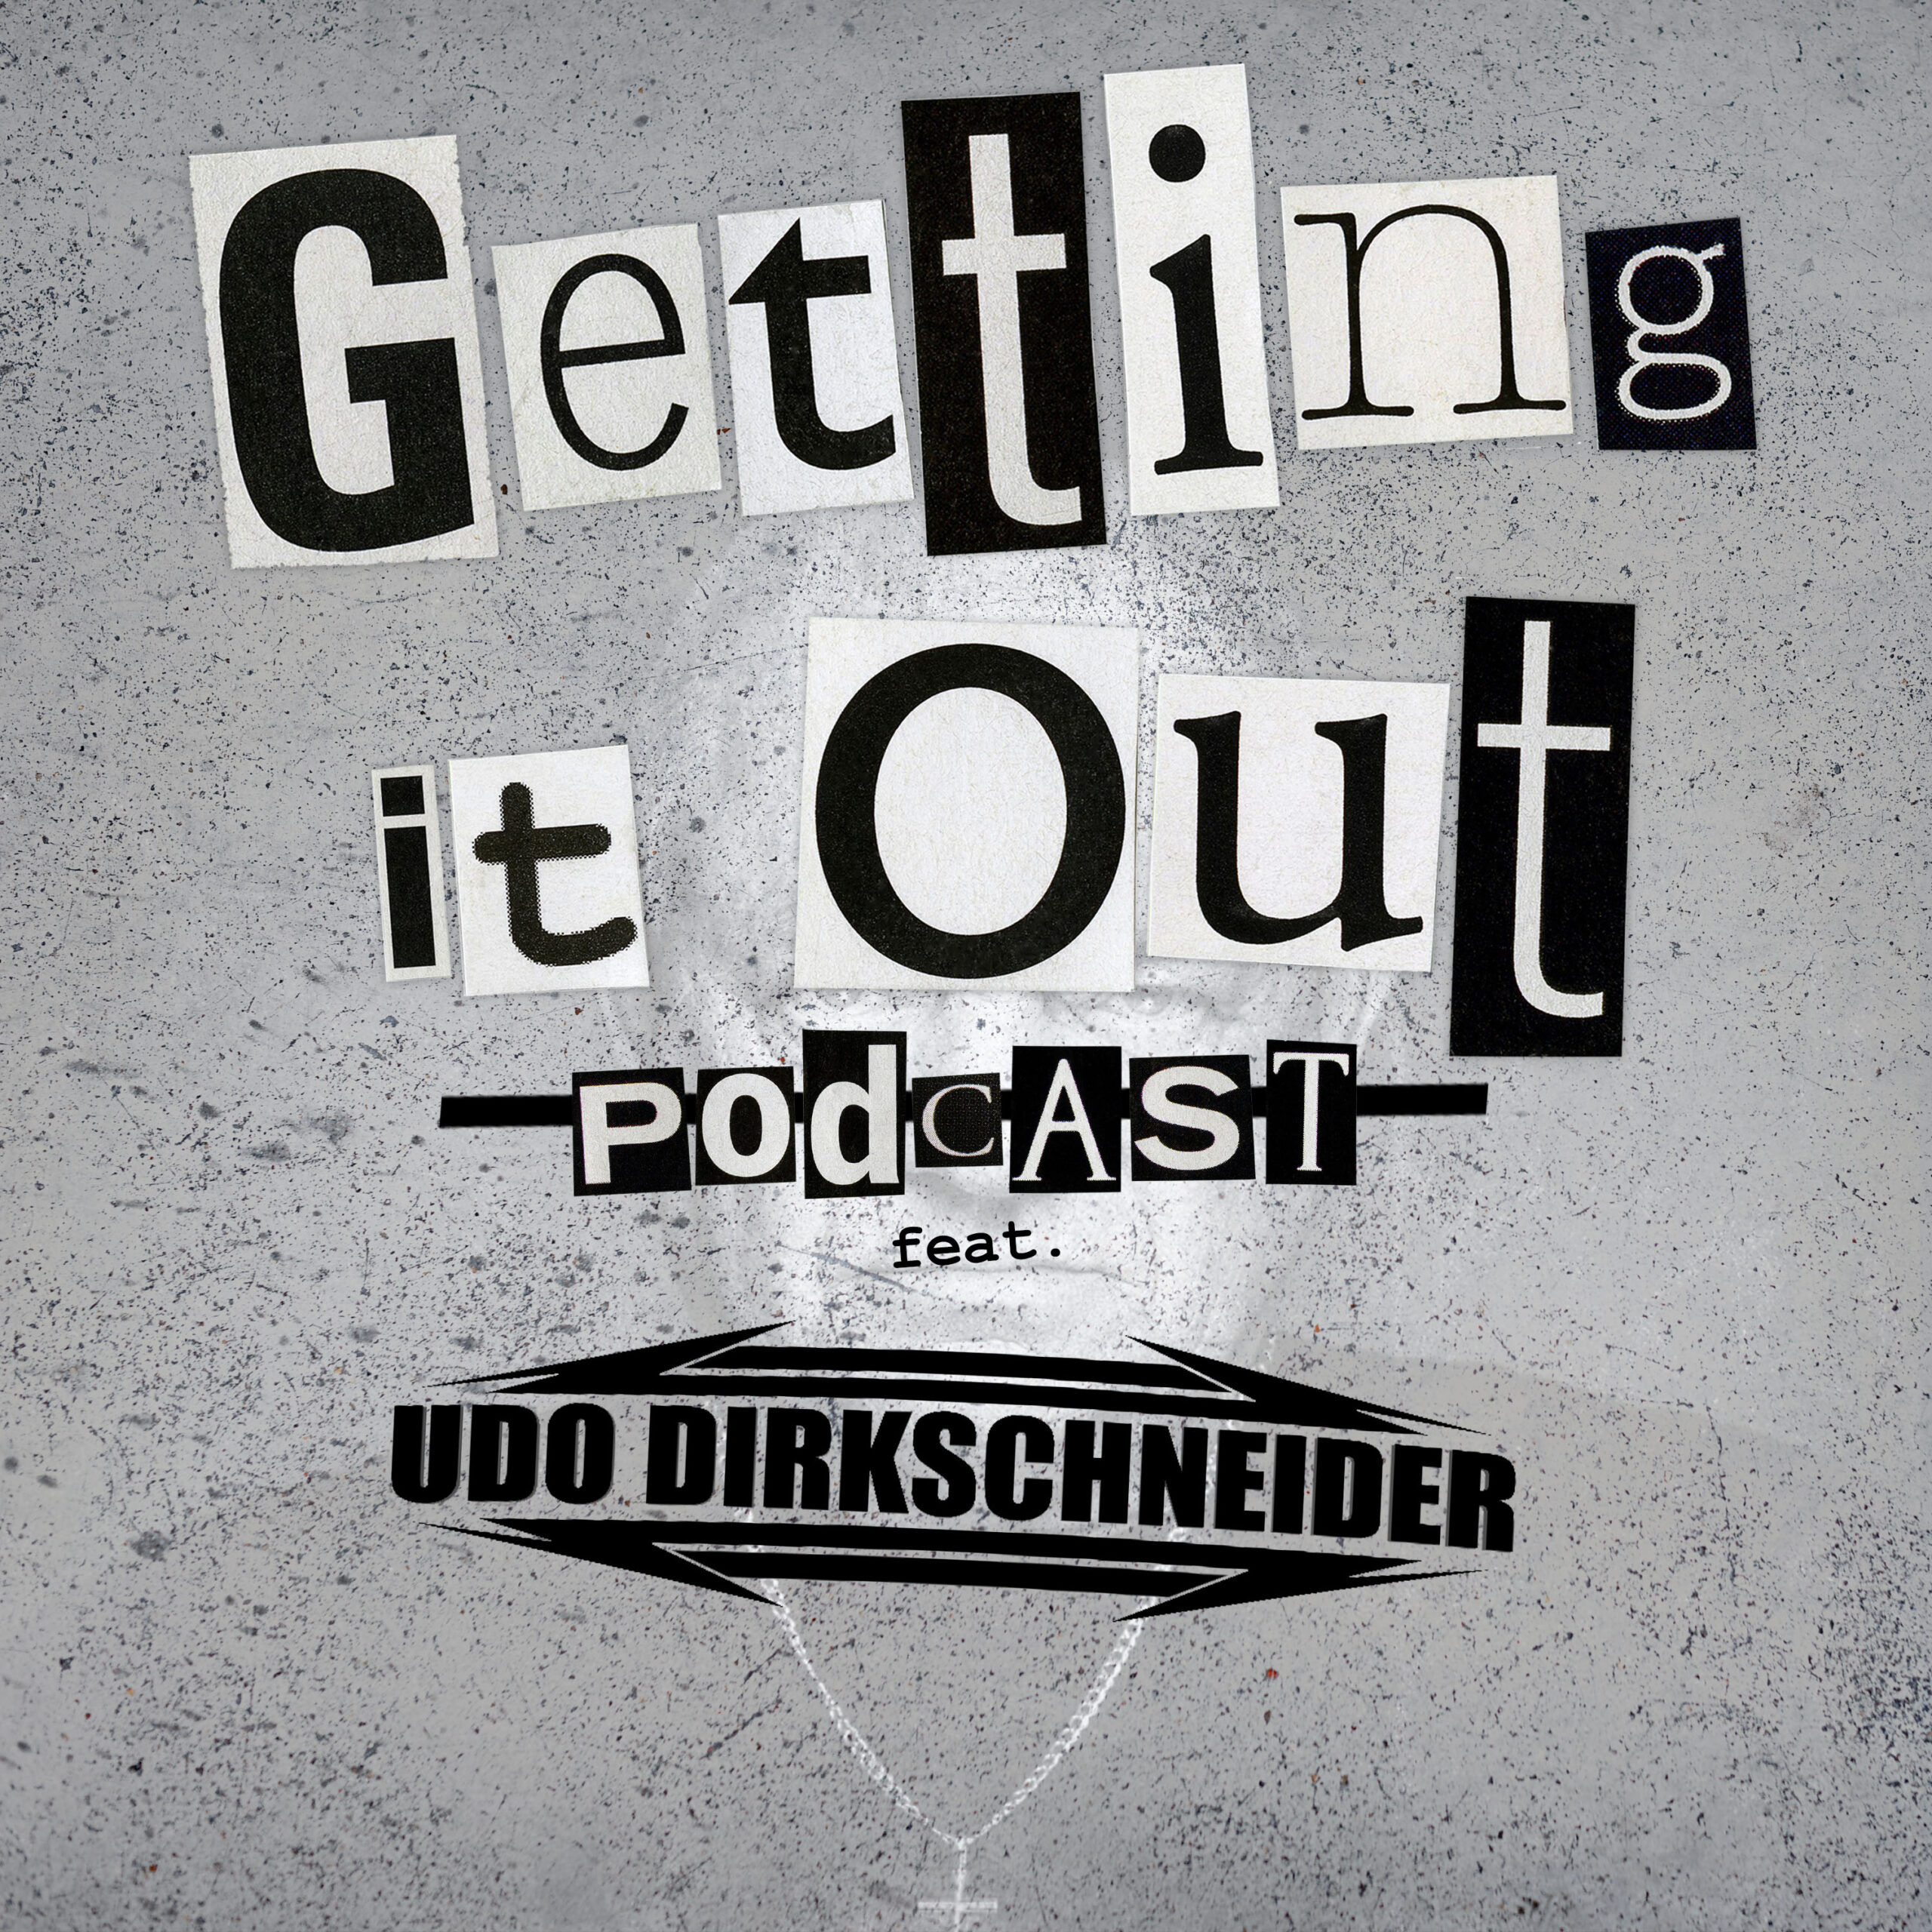 Episode 219 - Udo Dirkschneider